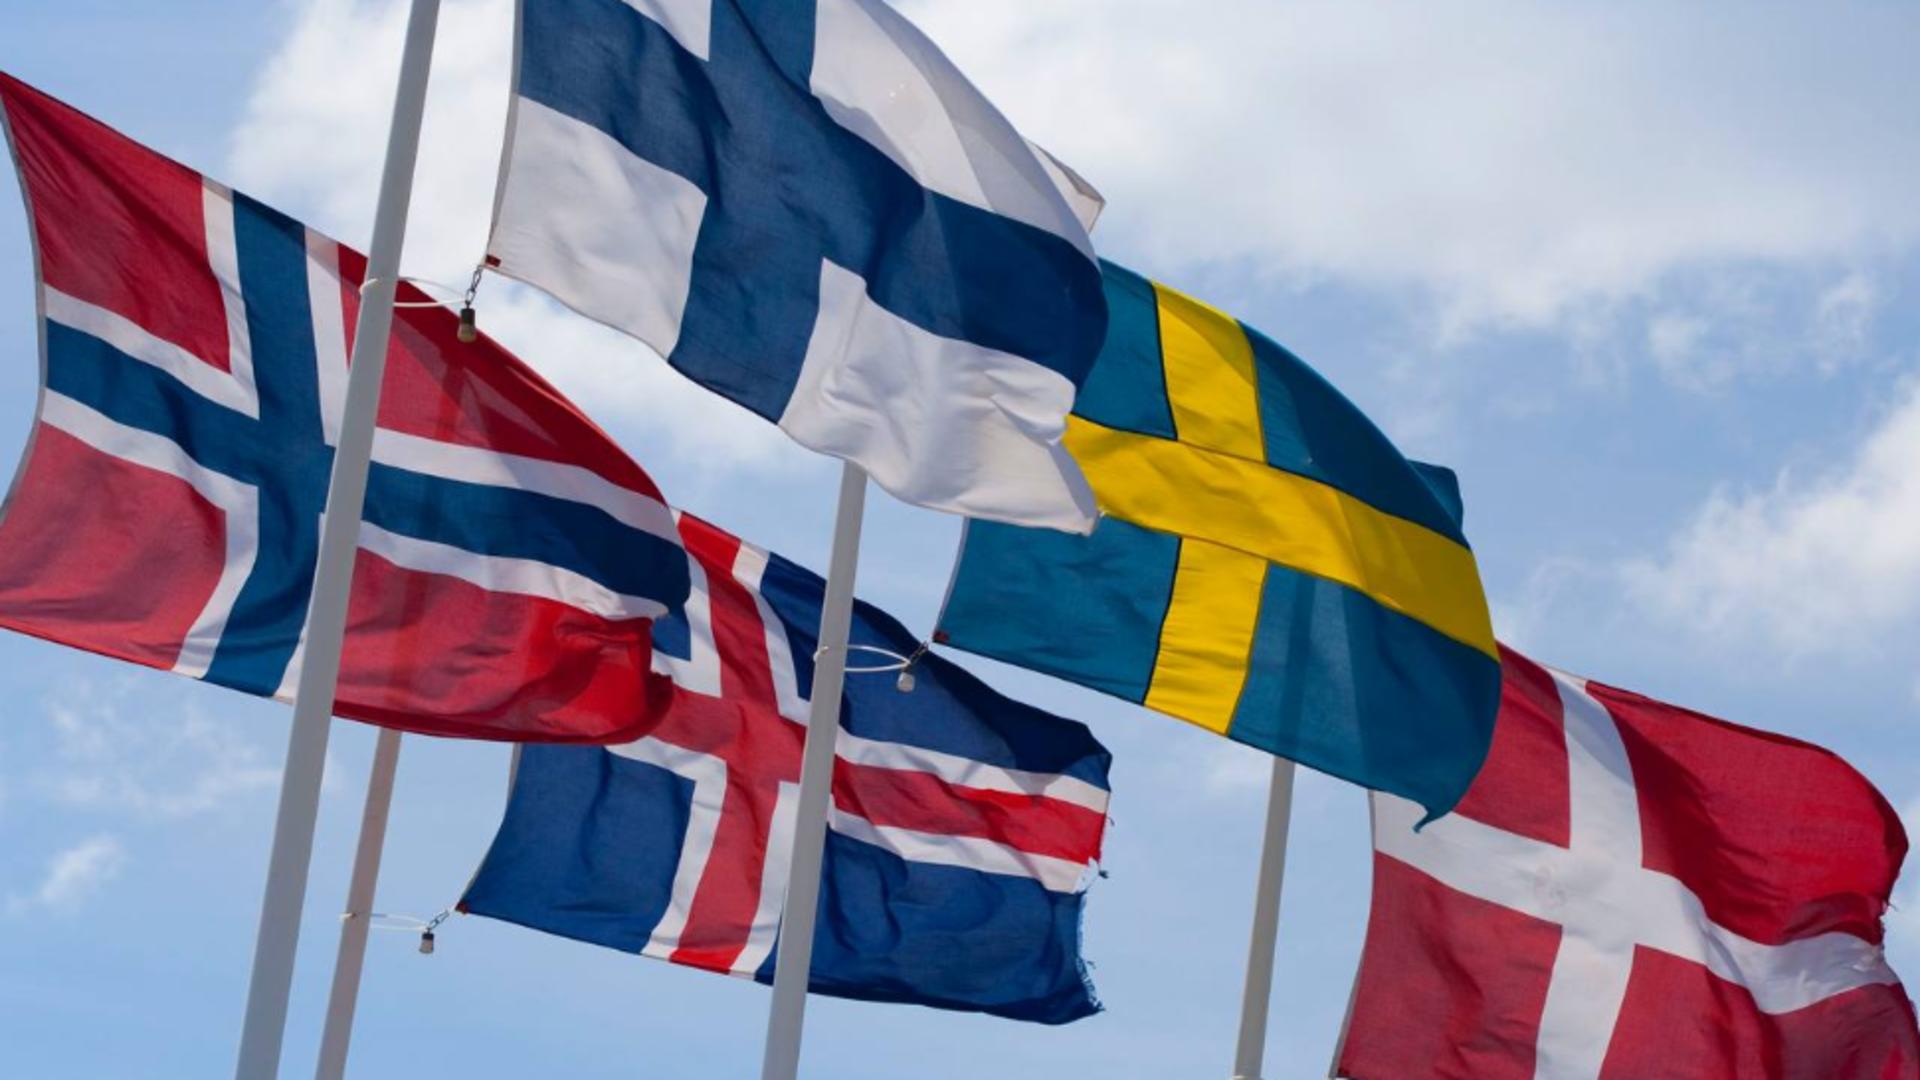 Steaguri țări scandinave/ Twitter Nexta